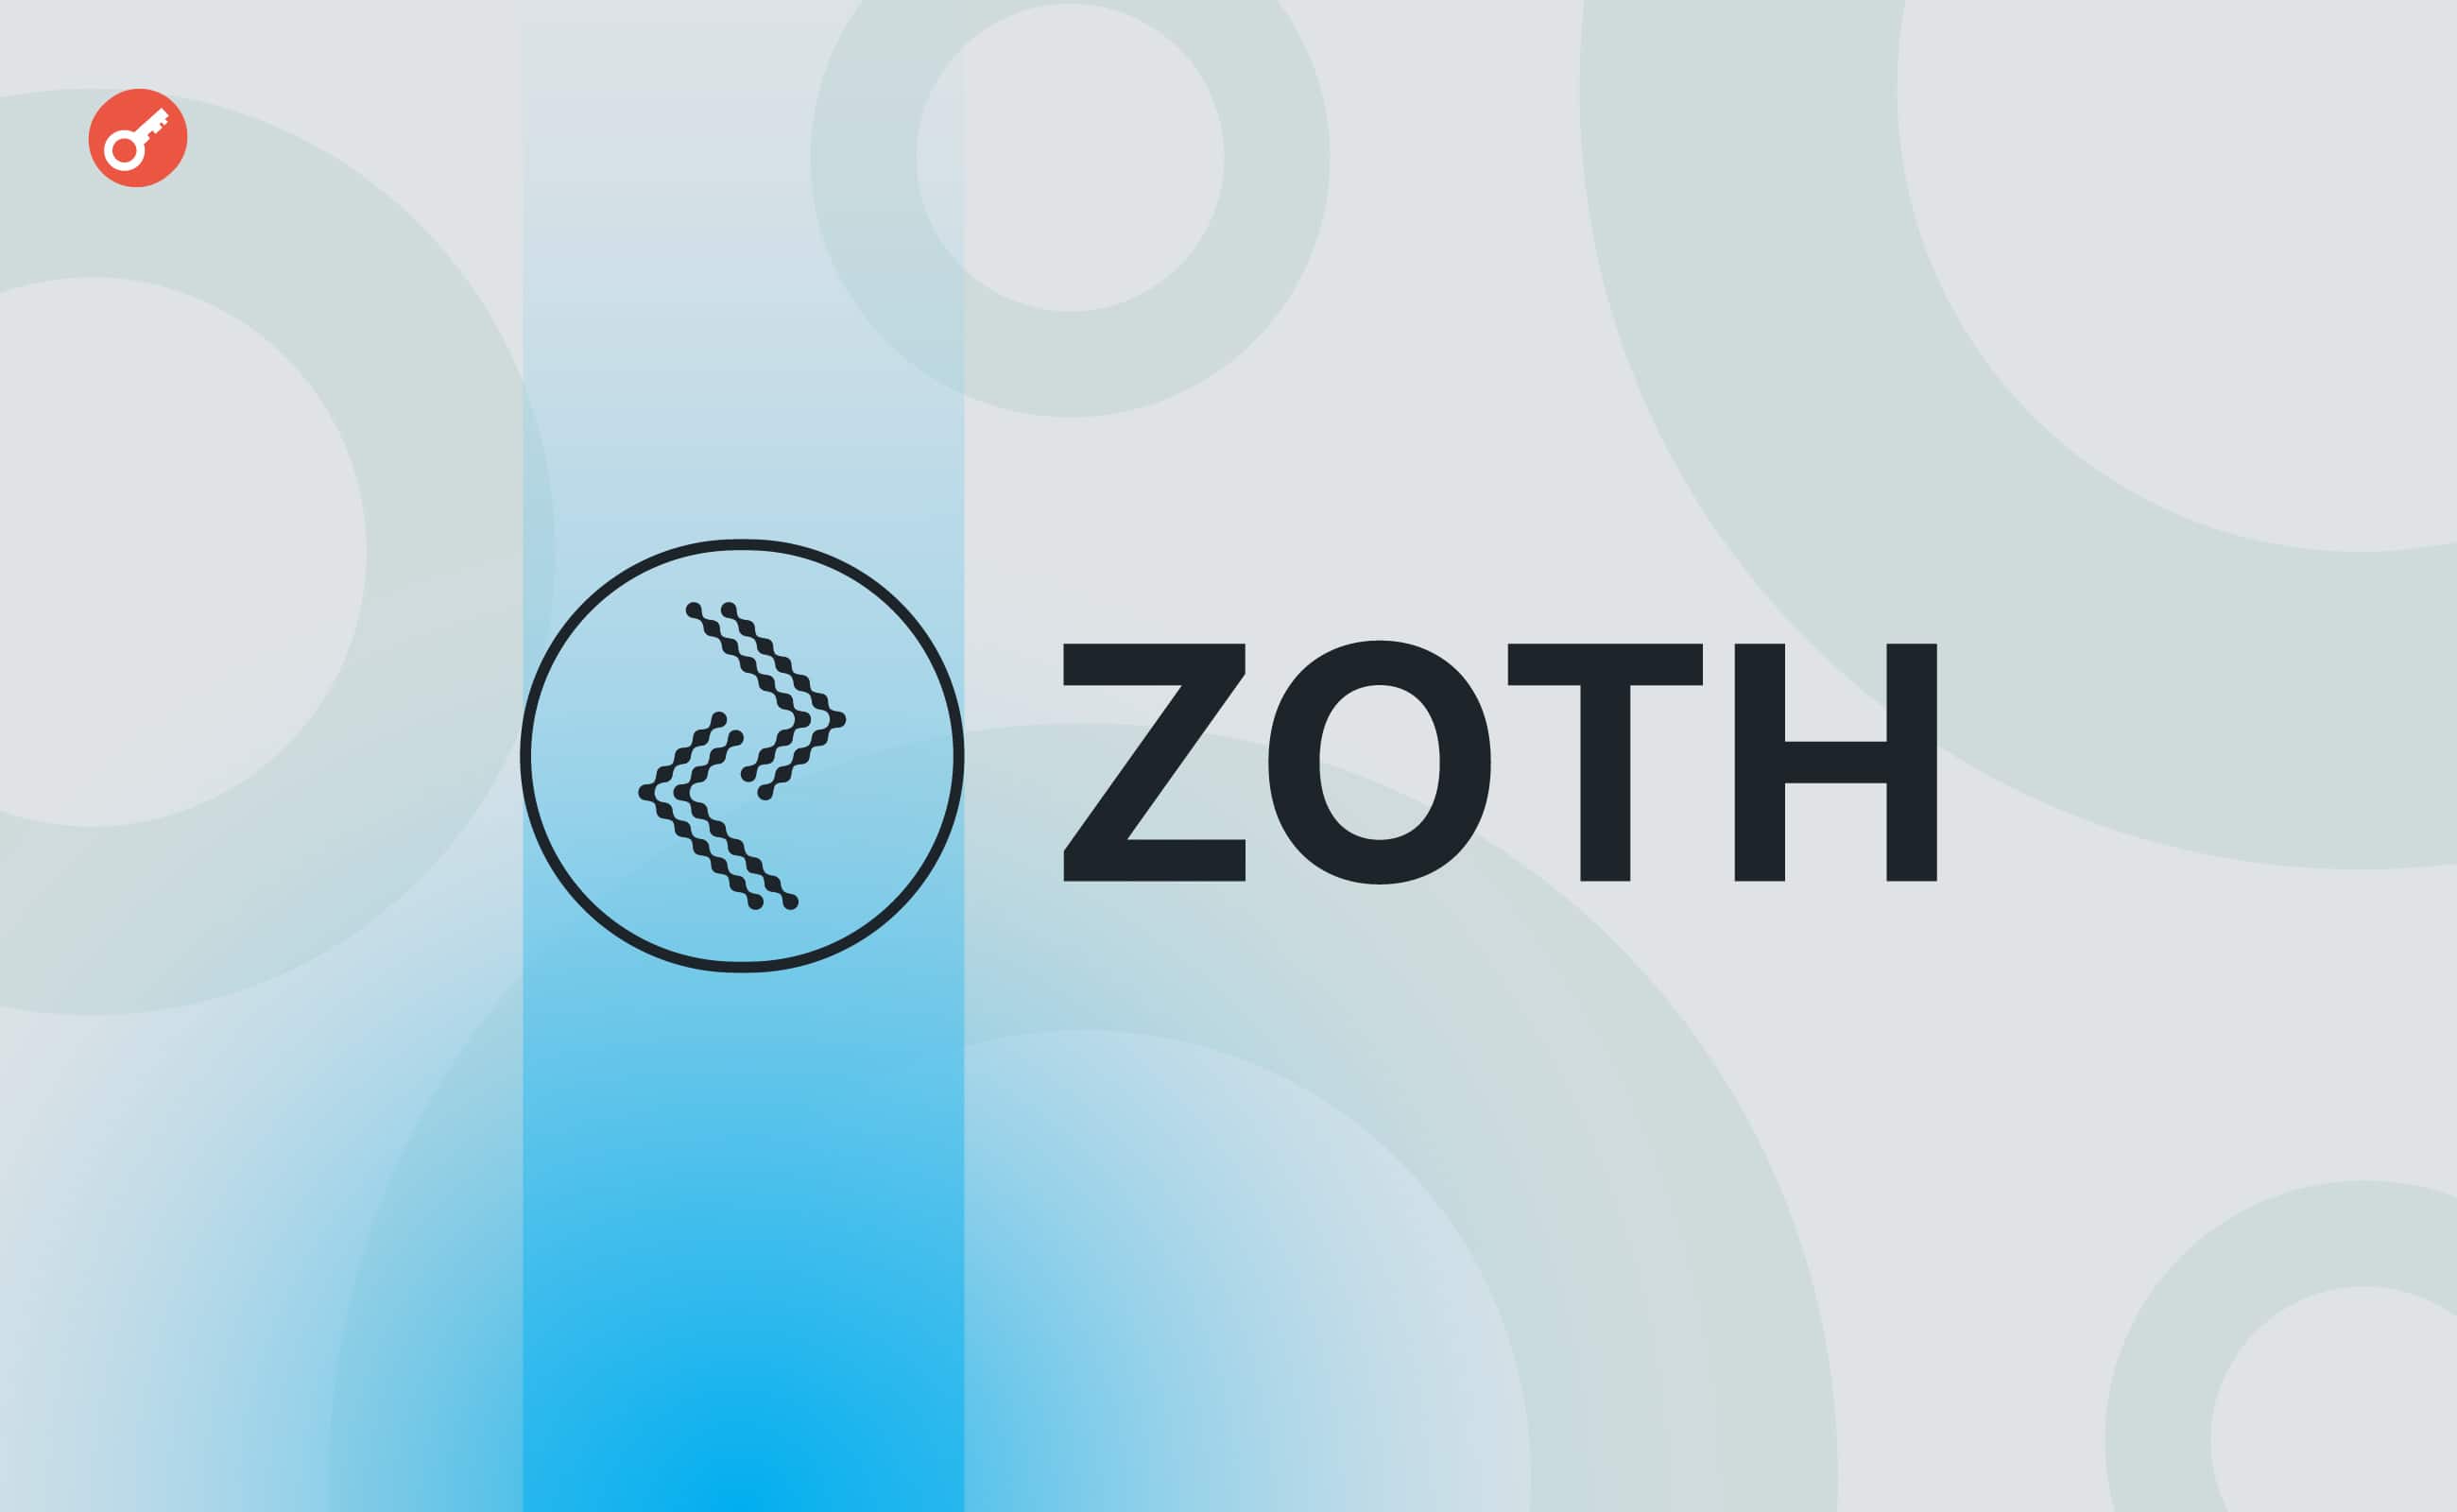 Проєкт Zoth зібрав $2,5 млн для розвитку екосистеми. Головний колаж новини.